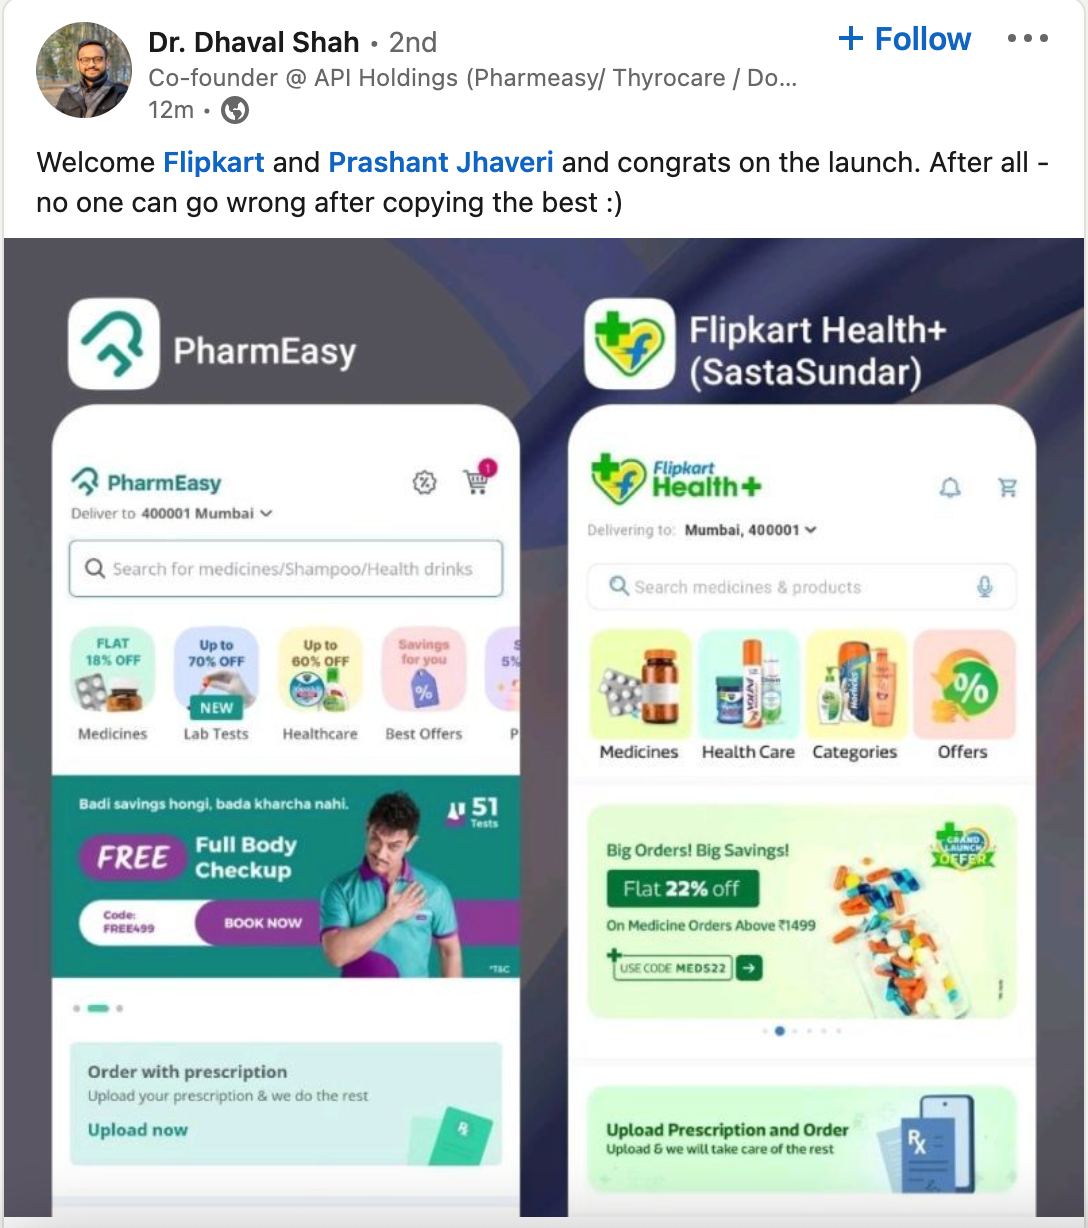 Pharmeasy Flipkart Health+